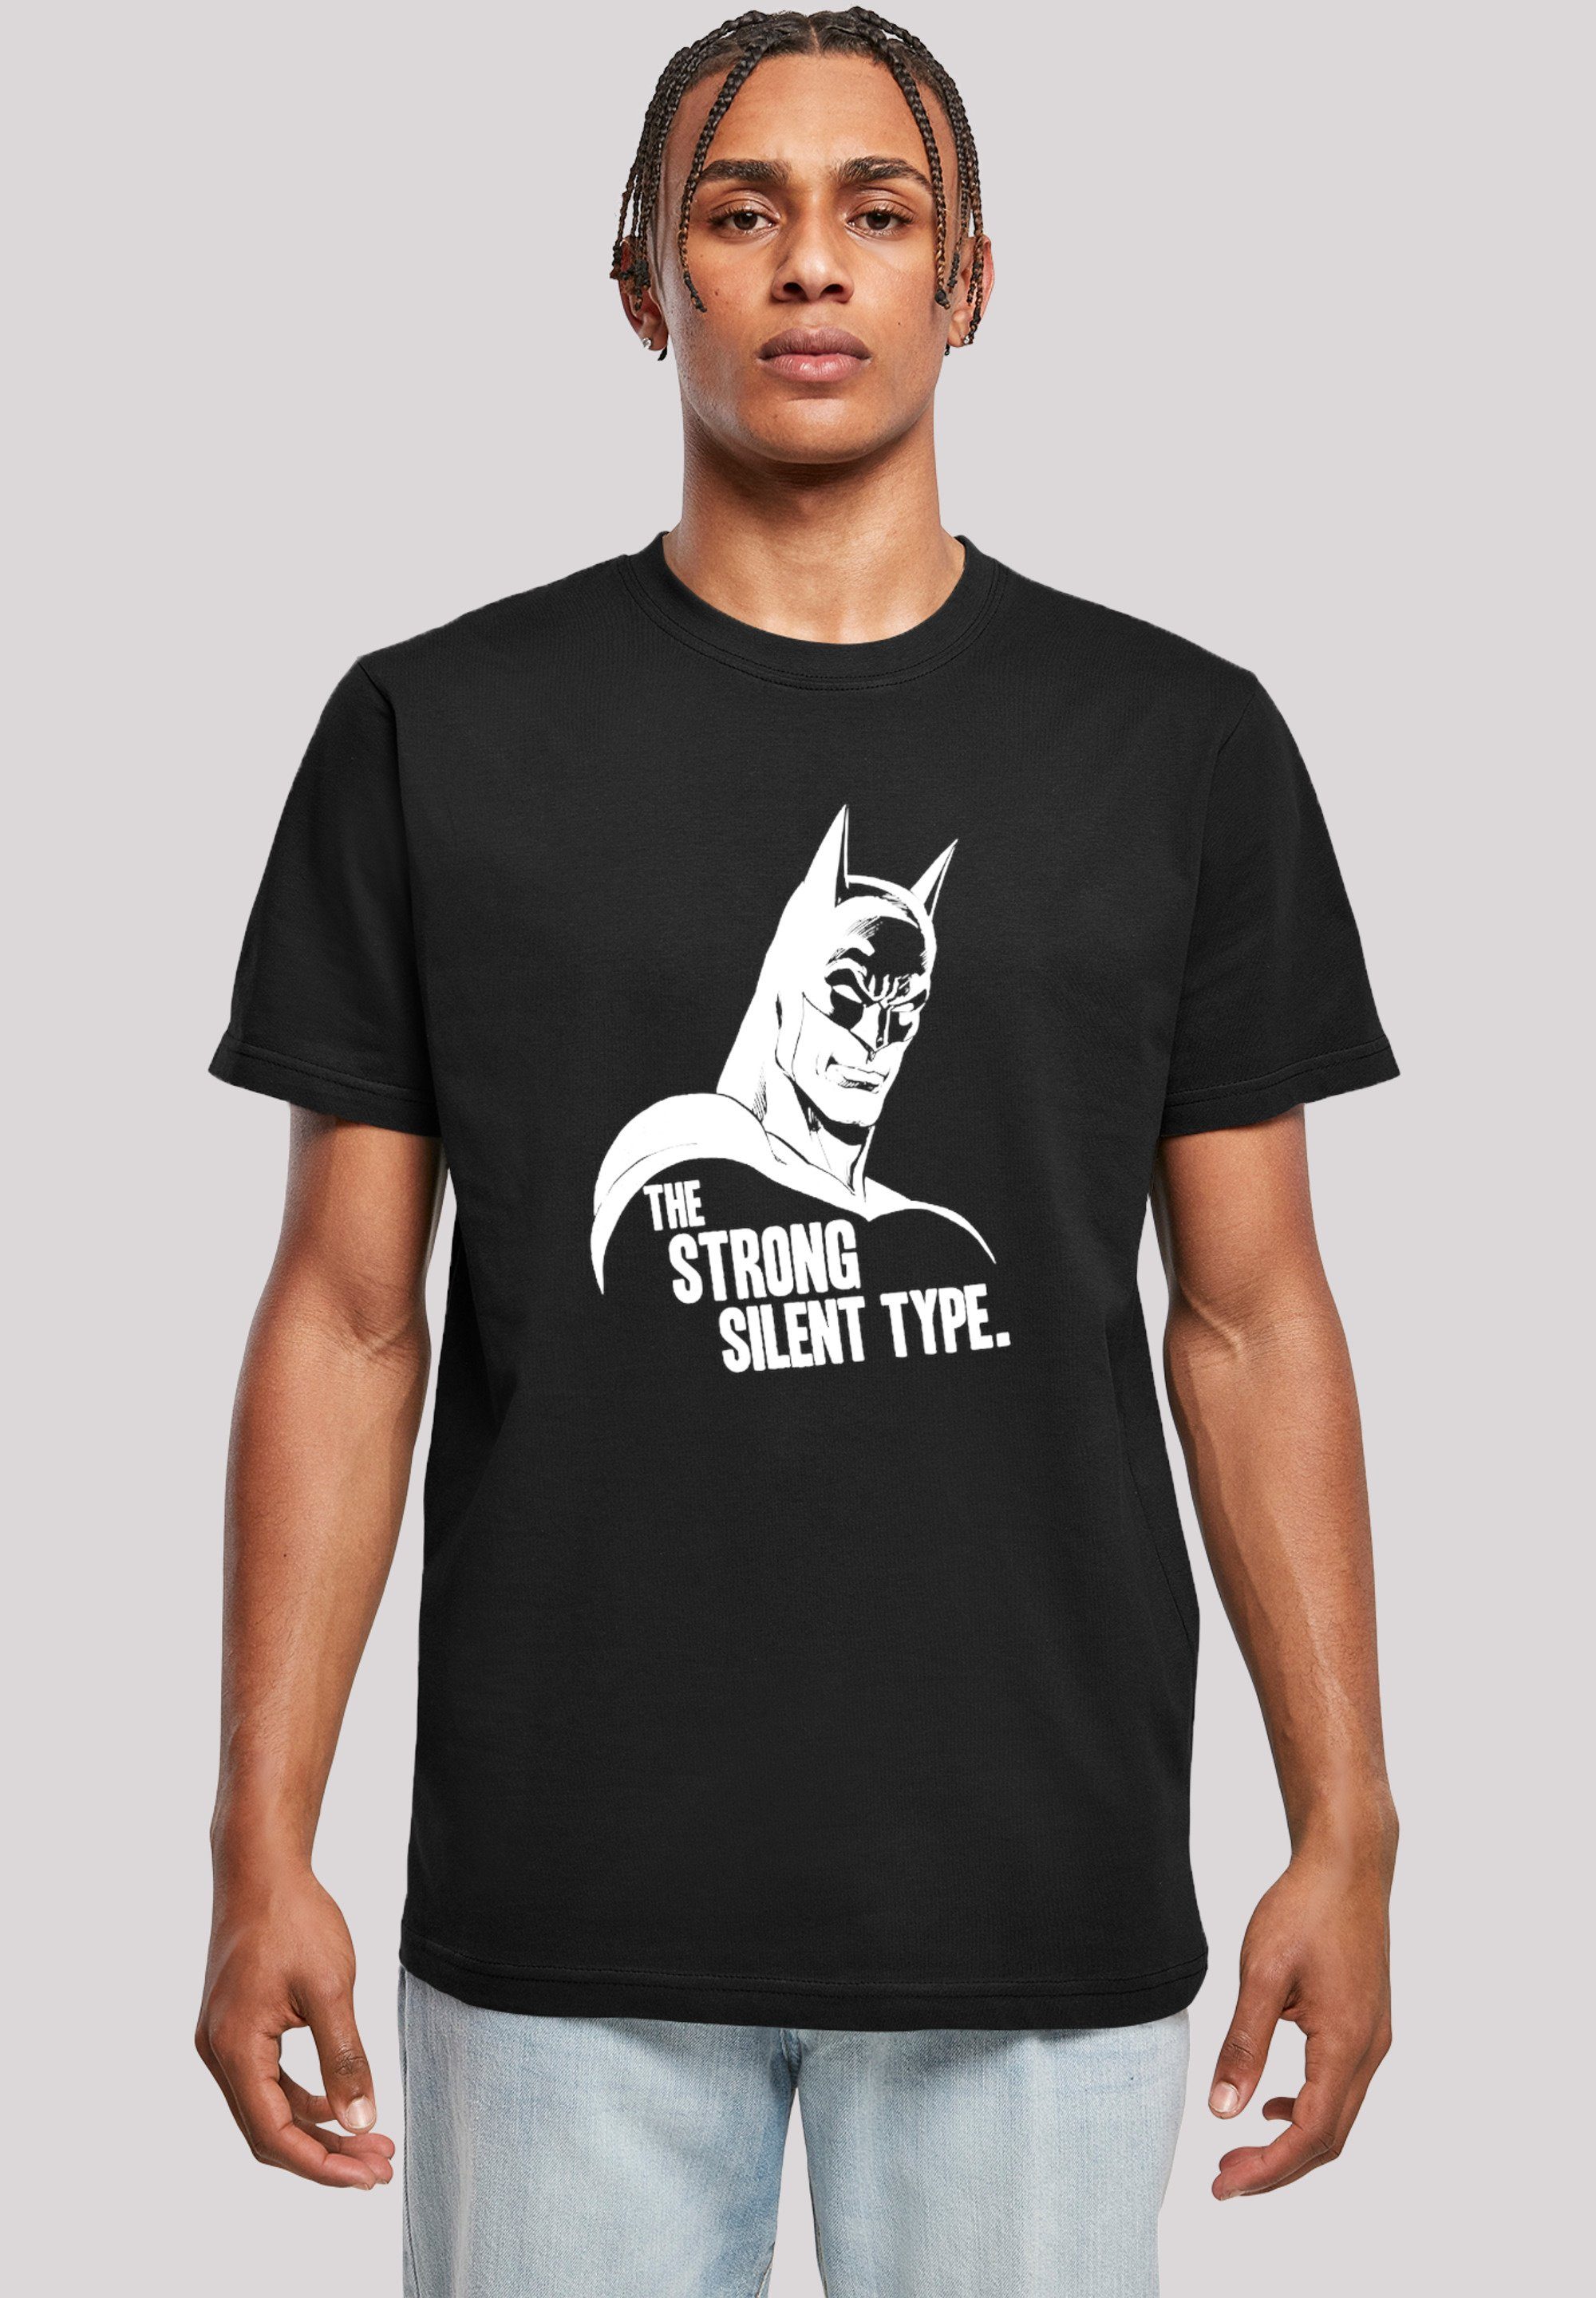 Der frühe Vogel fängt den Wurm F4NT4STIC T-Shirt Batman Herren,Premium The Type Superheld Silent Strong Merch,Regular-Fit,Basic,Bedruckt